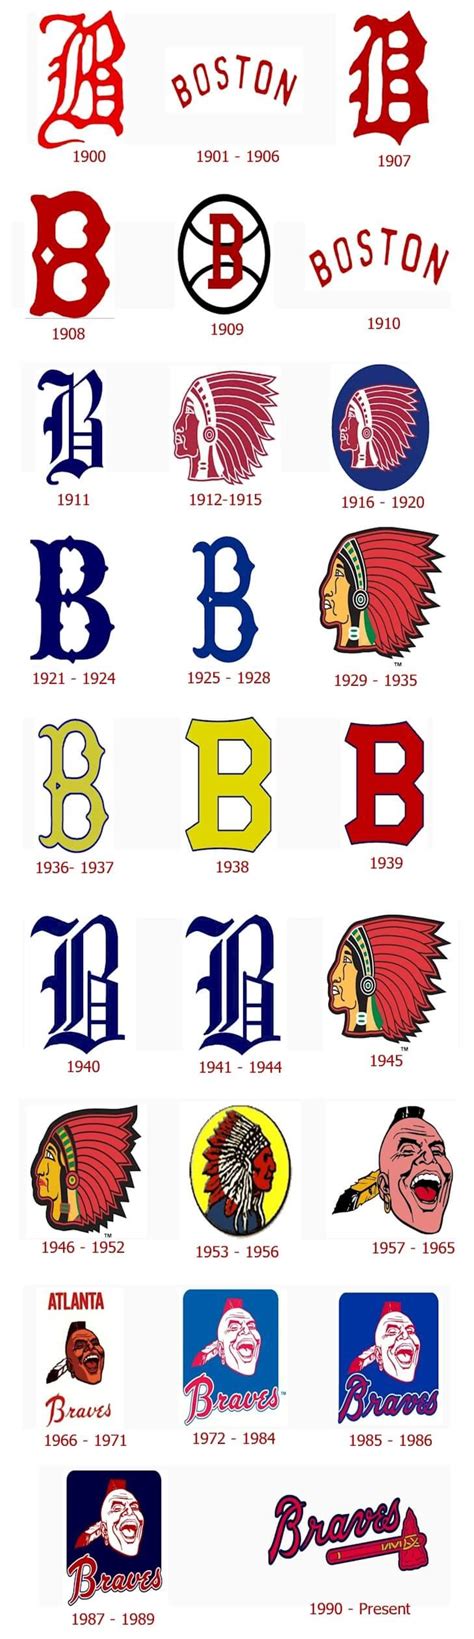 Braves mascot history